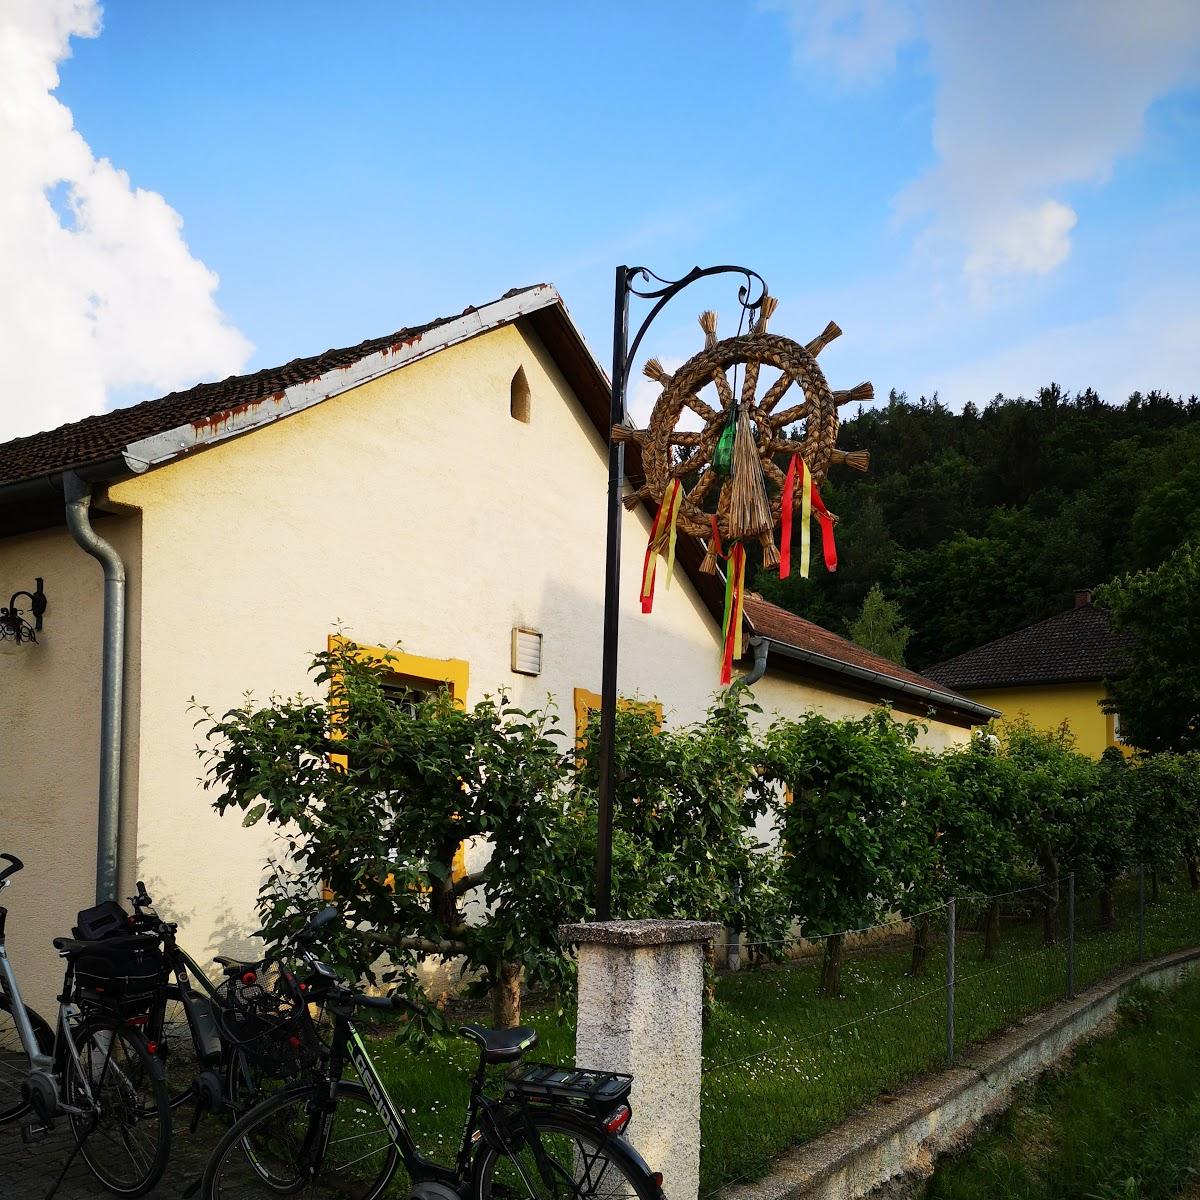 Restaurant "Weinbau Lechner" in Paudorf